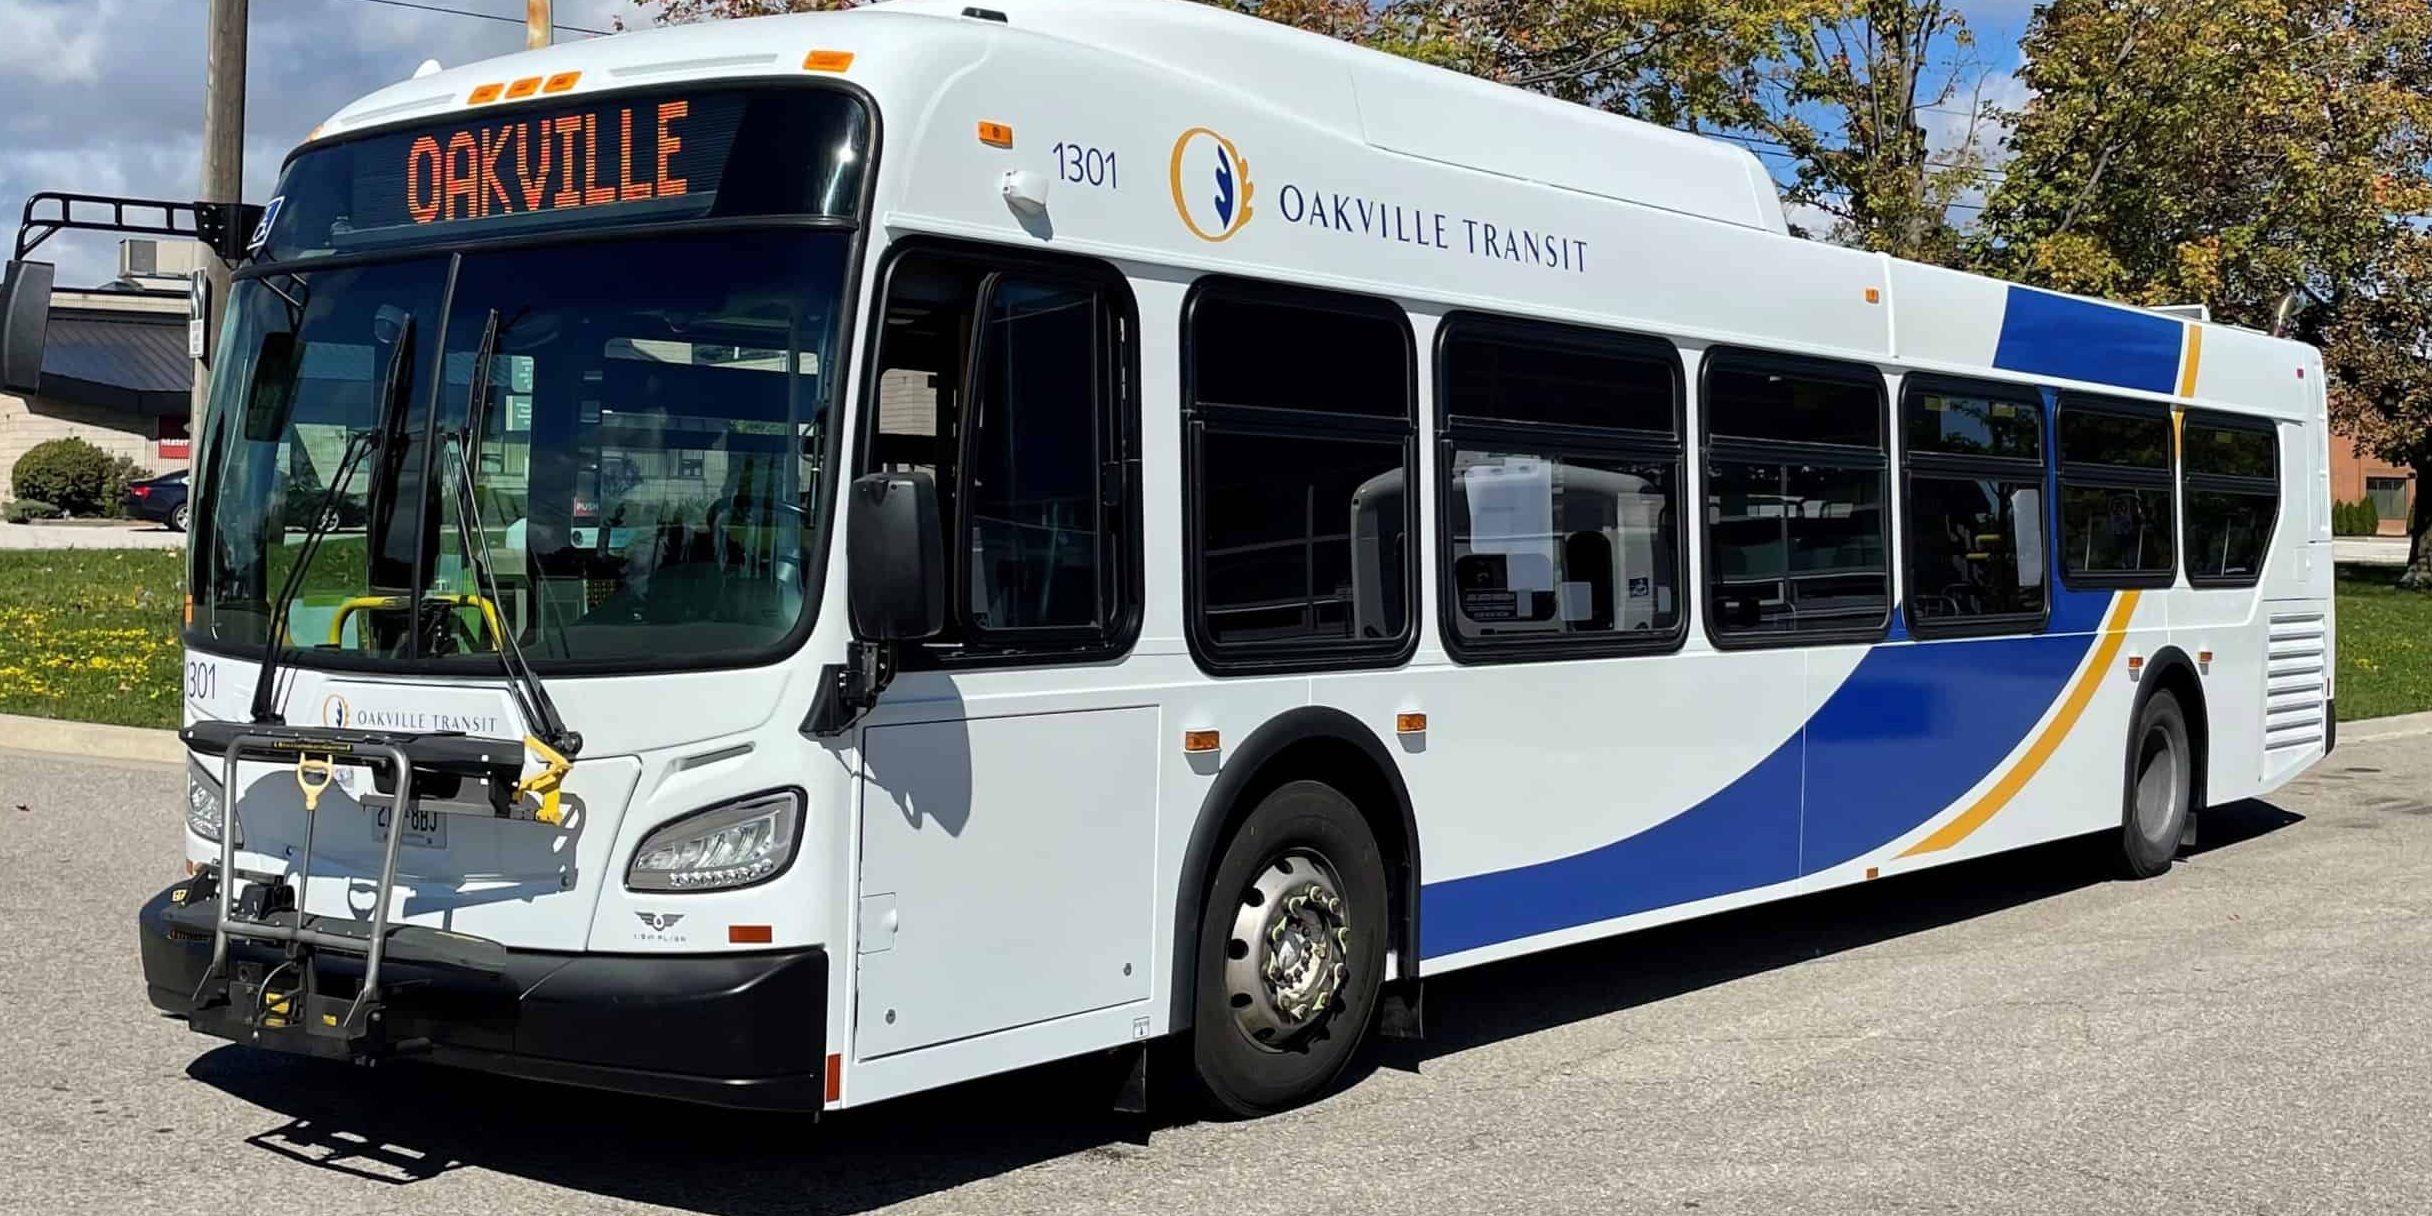 Oakville transit ride demand permanent expanded